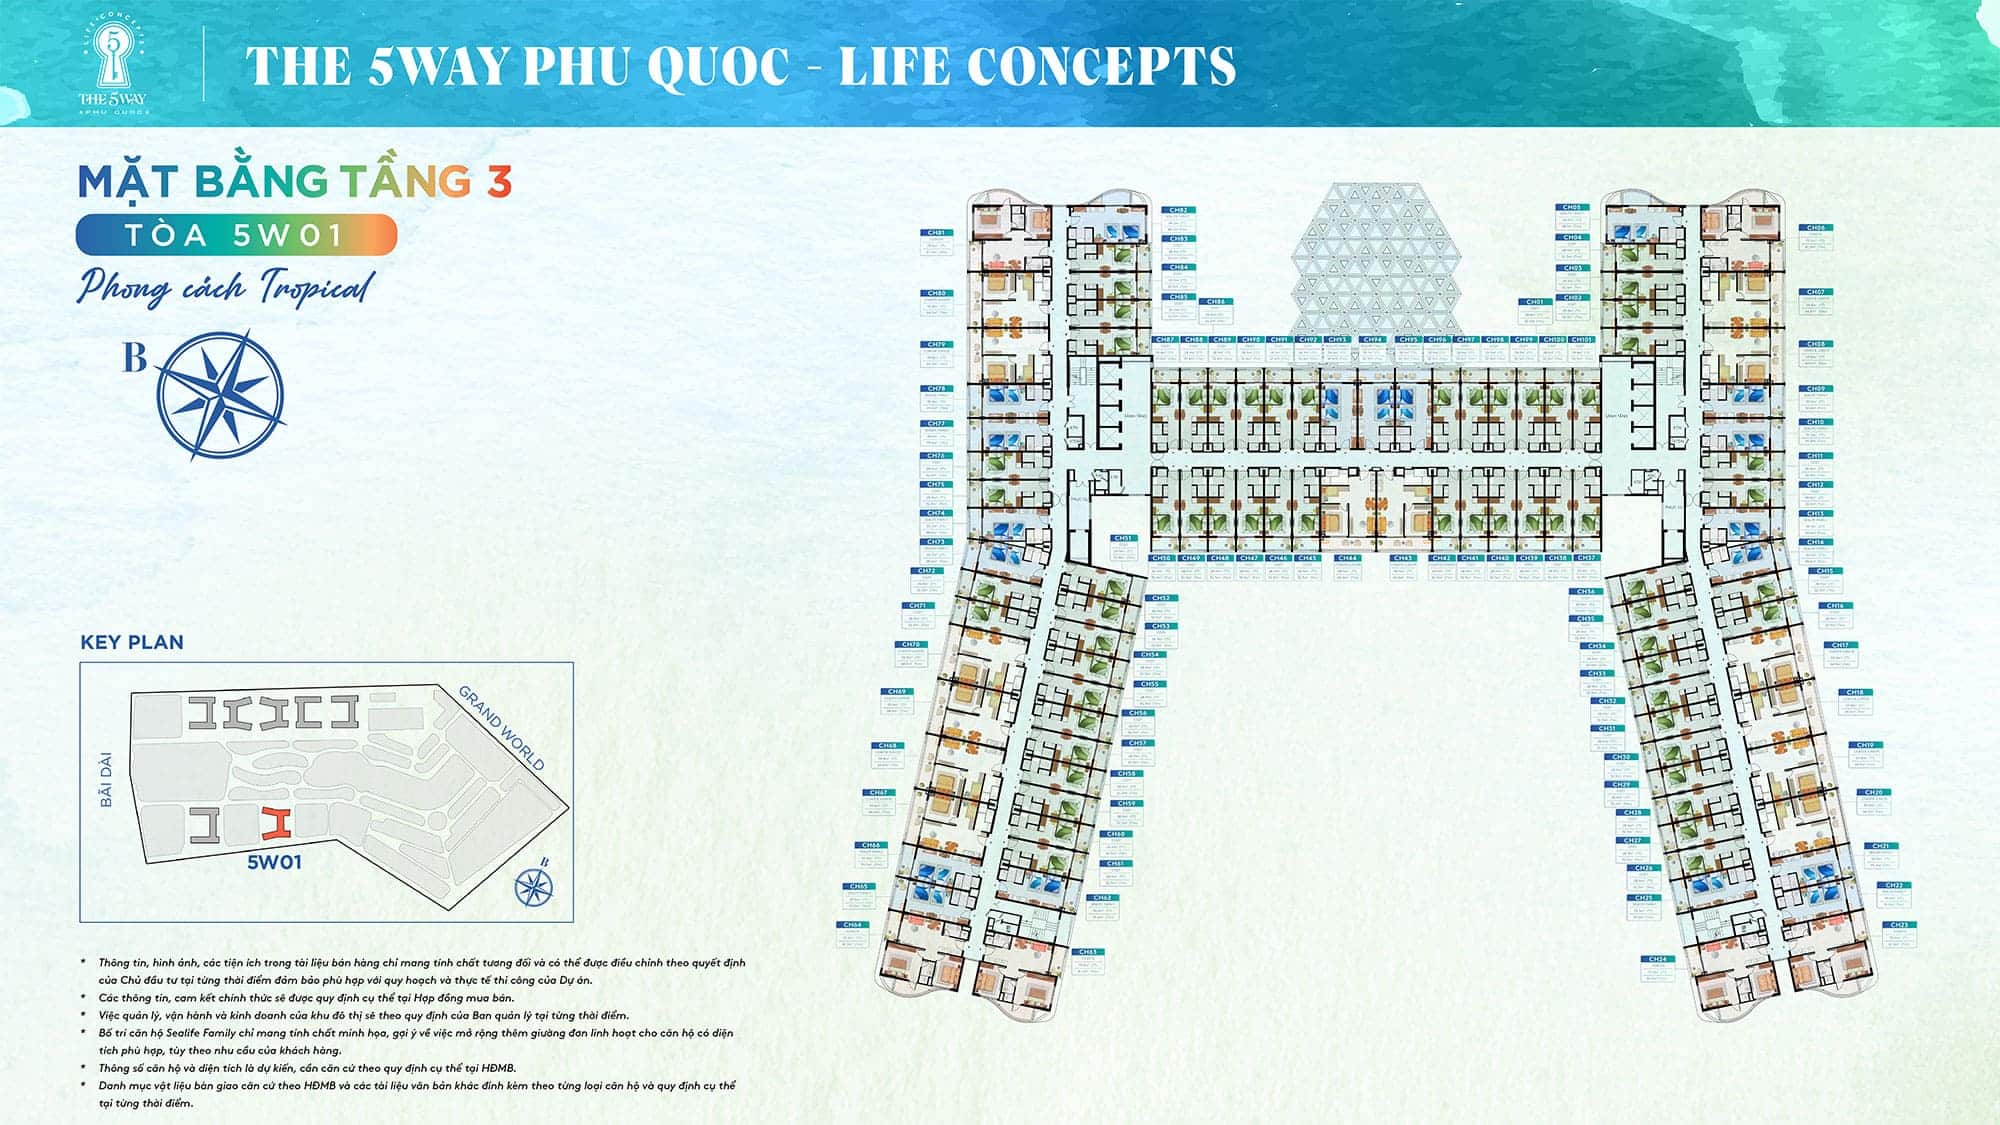 Mặt bằng Tầng 3, Tòa 5W01 phong cách Tropical thuộc dự án The 5Way - Life Concepts.